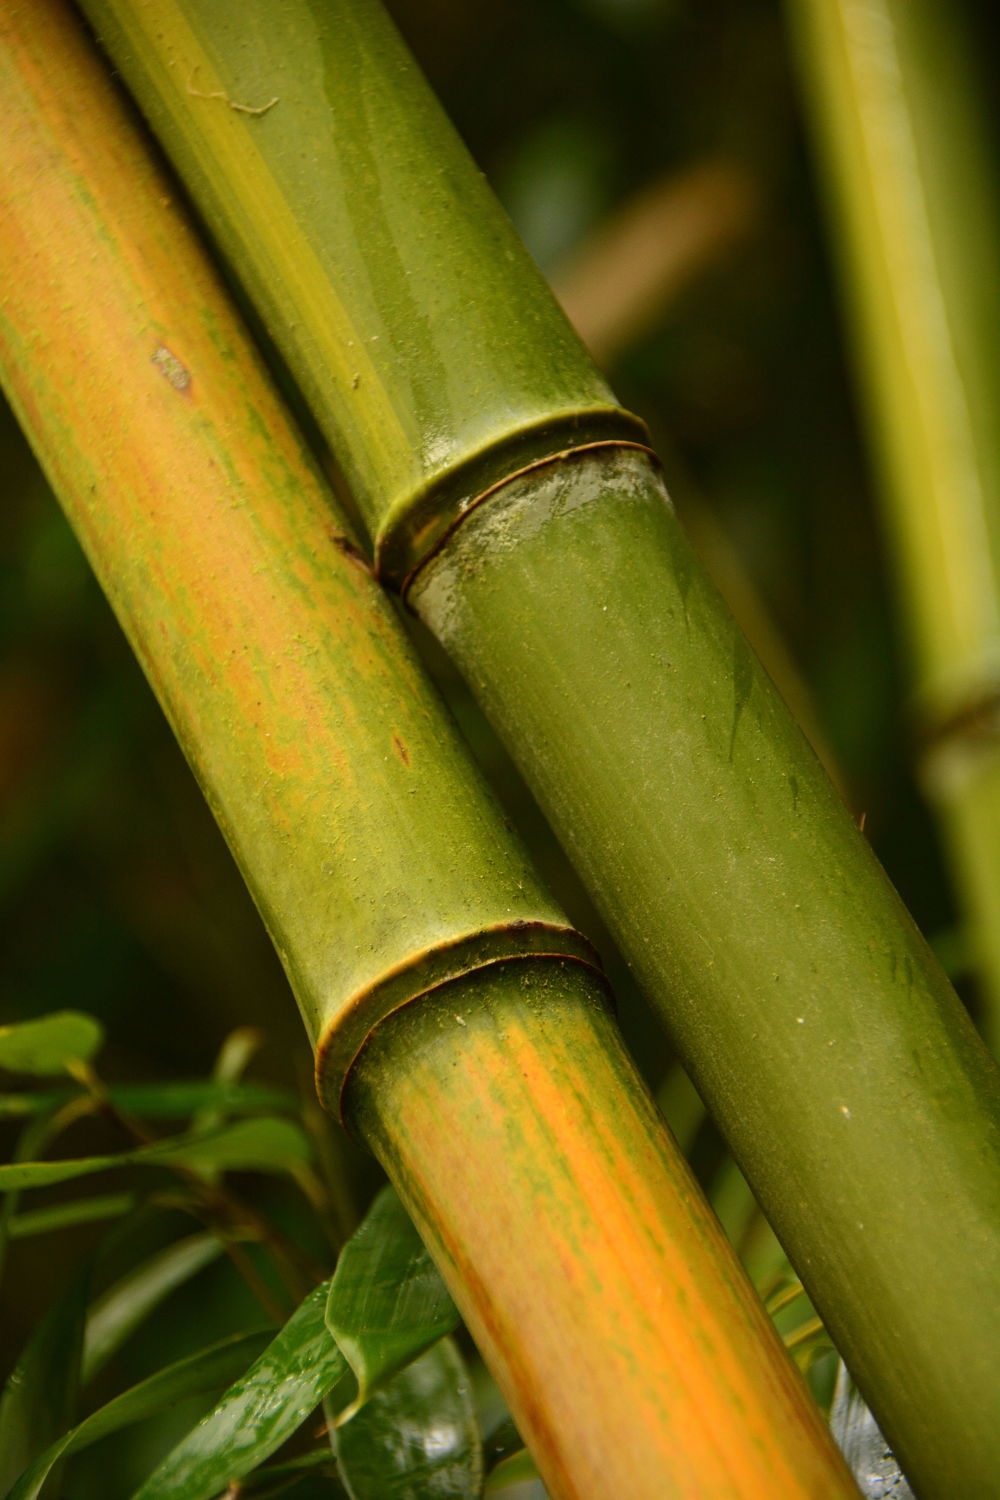 Bild mit Grün, Bambus, bamboo, Wellness, bambuswald, grüntöne, bambusstangen, bambusrohr